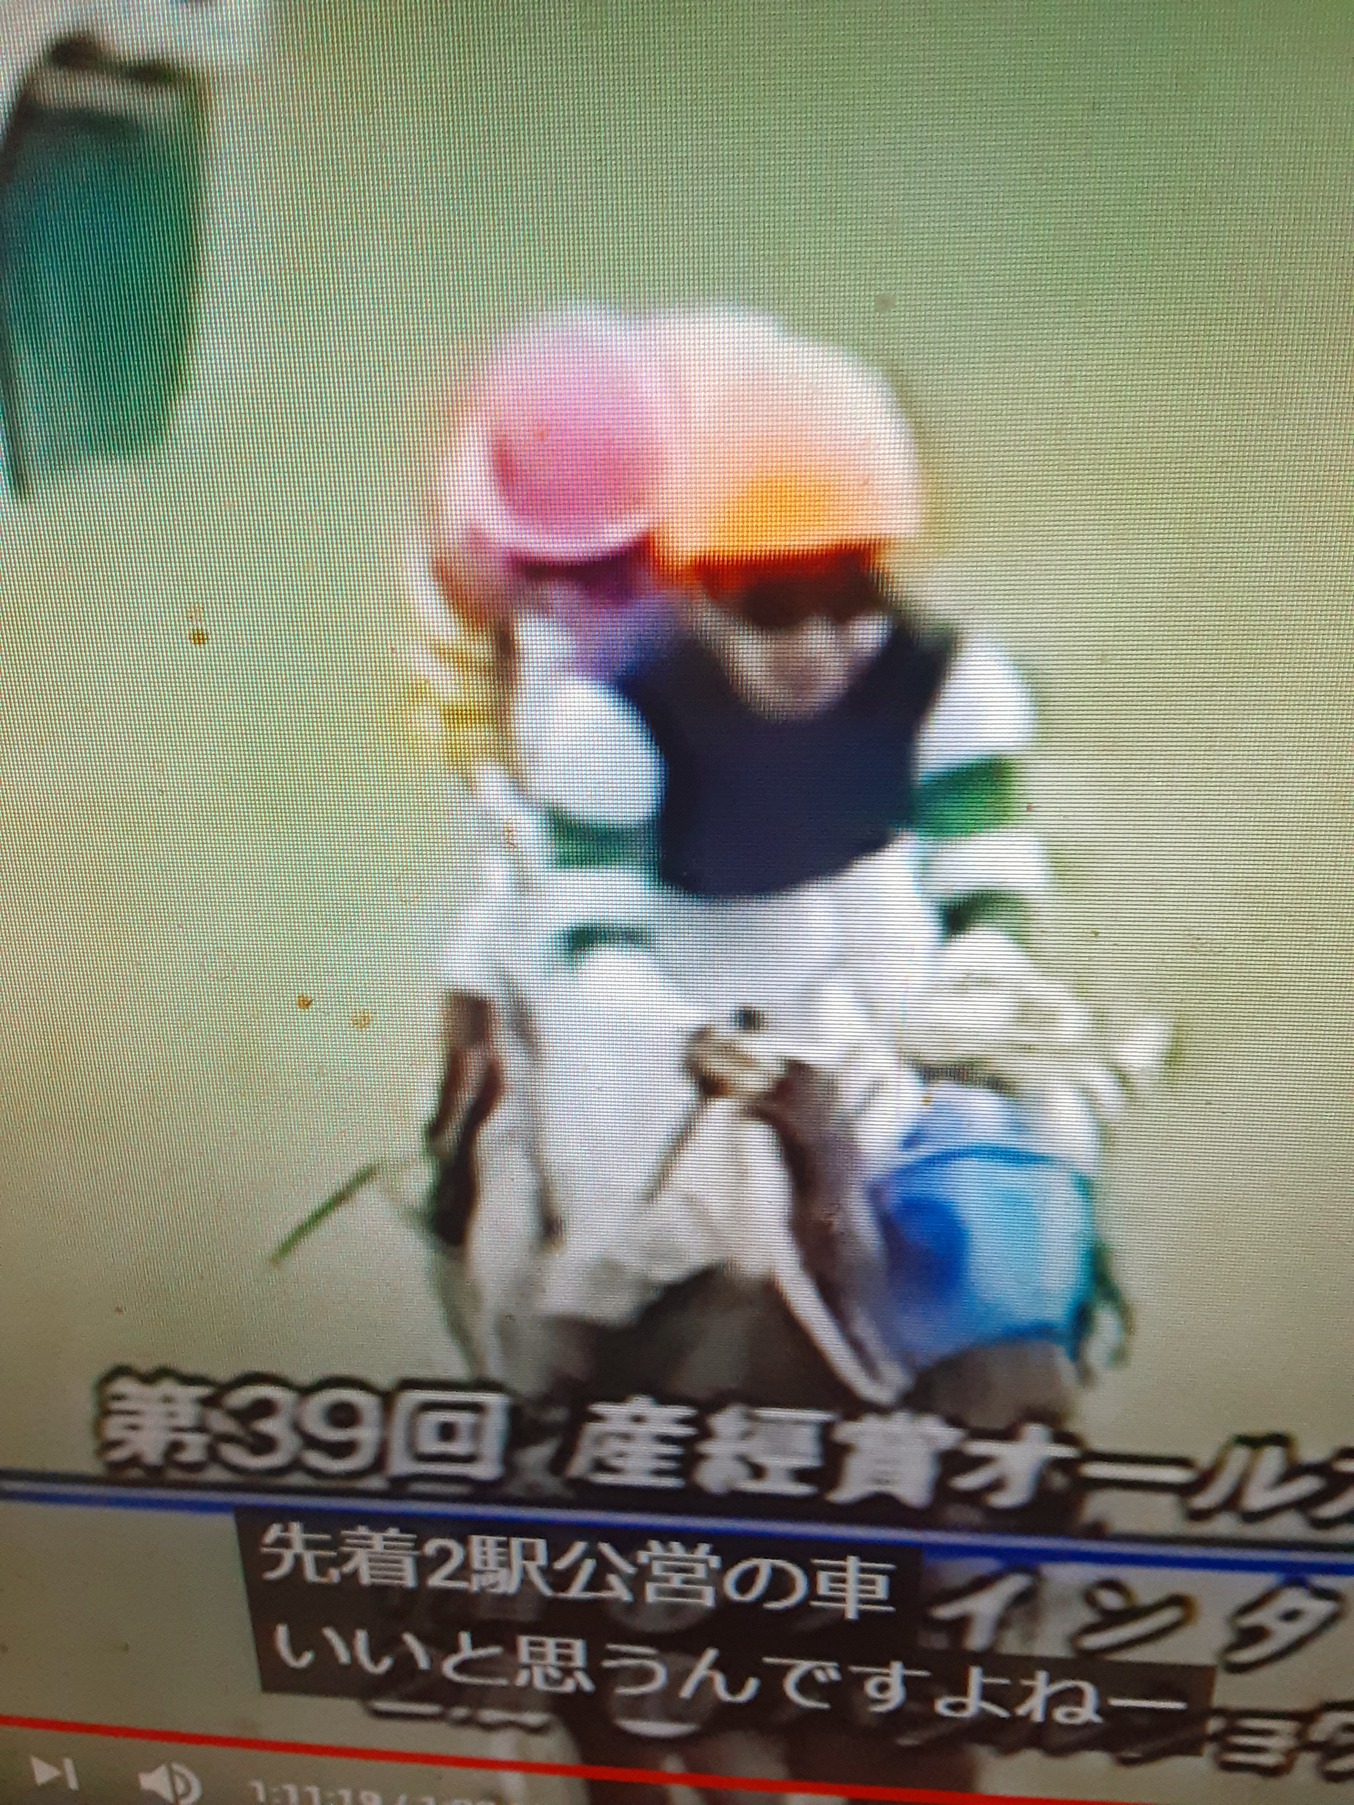 ツインターボ19年産 競走馬データtop 競馬予想のウマニティ サンスポ ニッポン放送公認sns